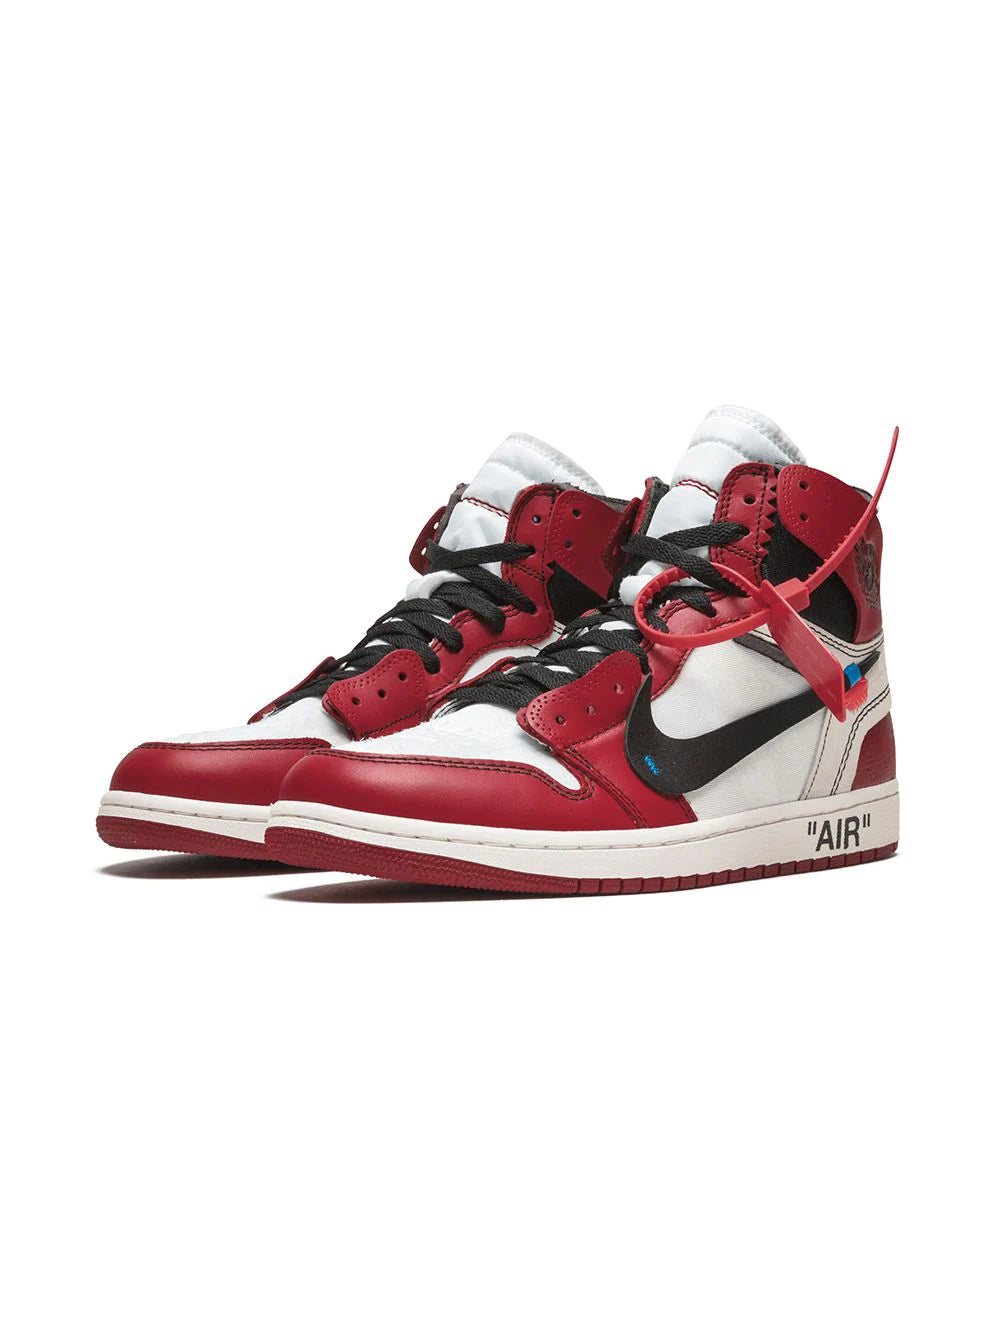 Jordan x Off-White The 10: Air Jordan 1 "Chicago" sneakers